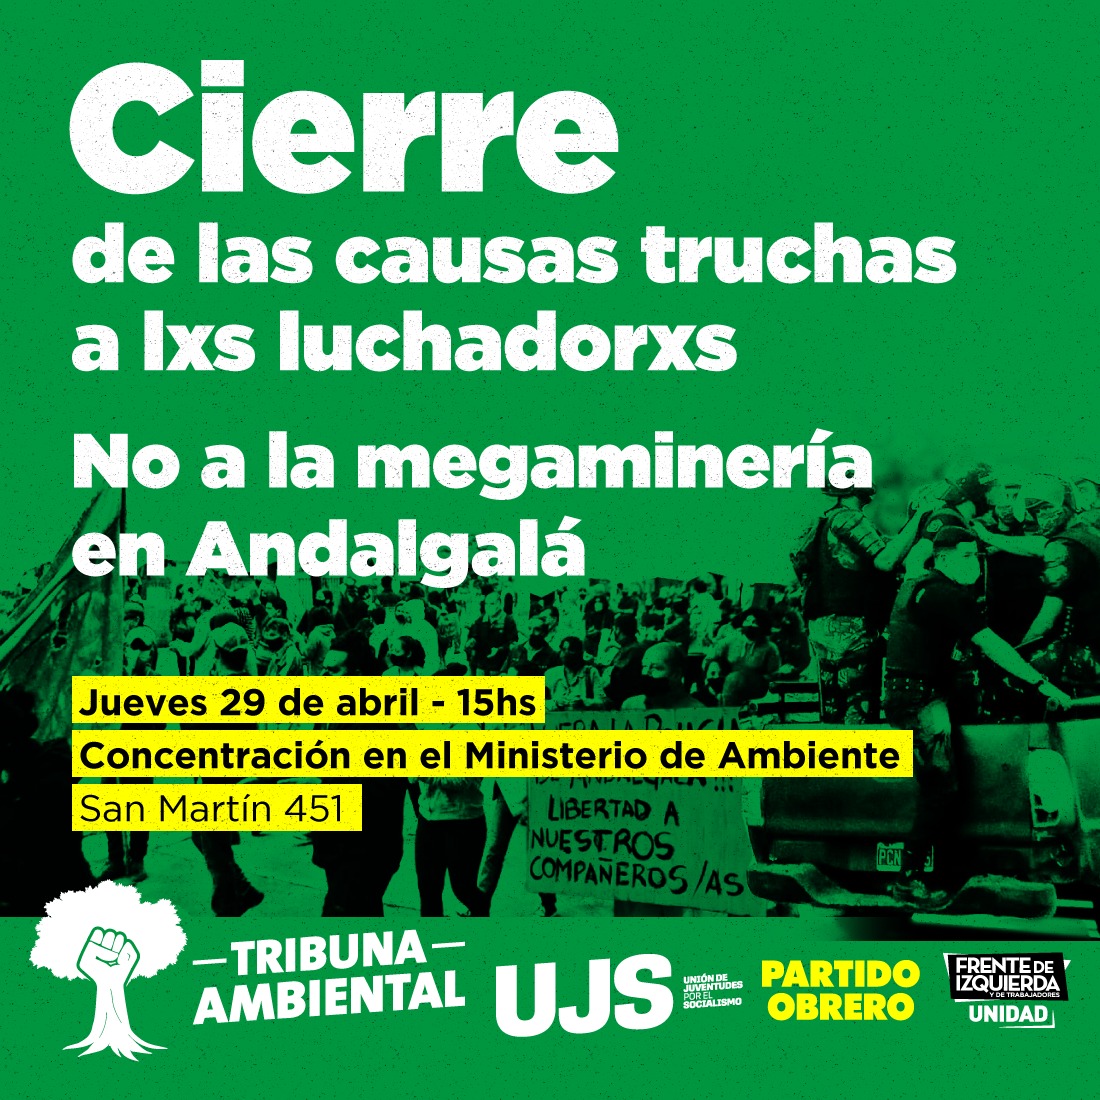 Jueves 15h en Ministerio de Ambiente San Martín 451 acto por el cierre de las causas de los luchadores de Andalgalá